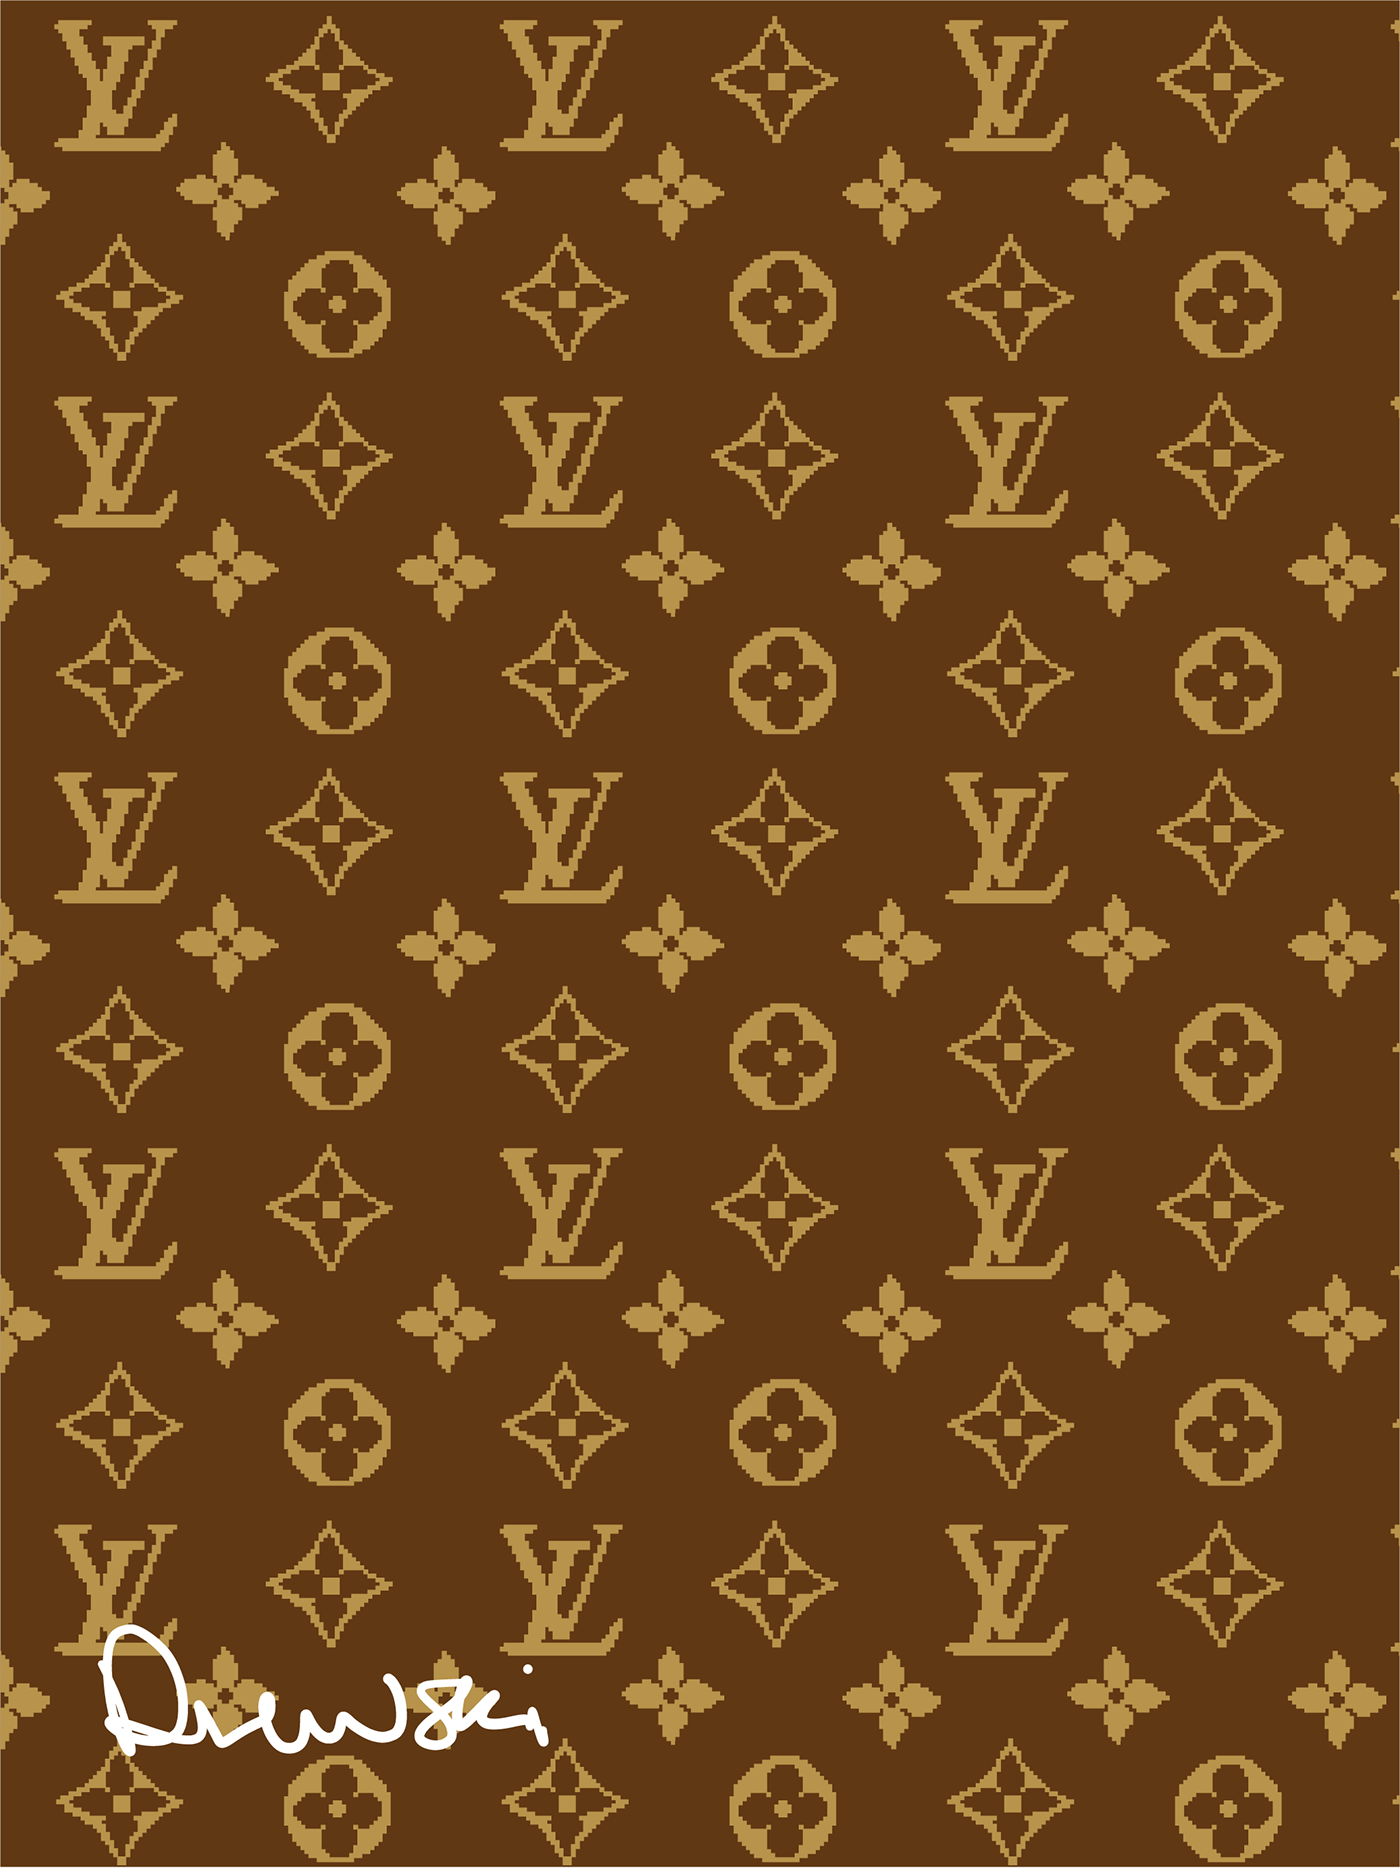 Louis Vuitton pattern color on Behance